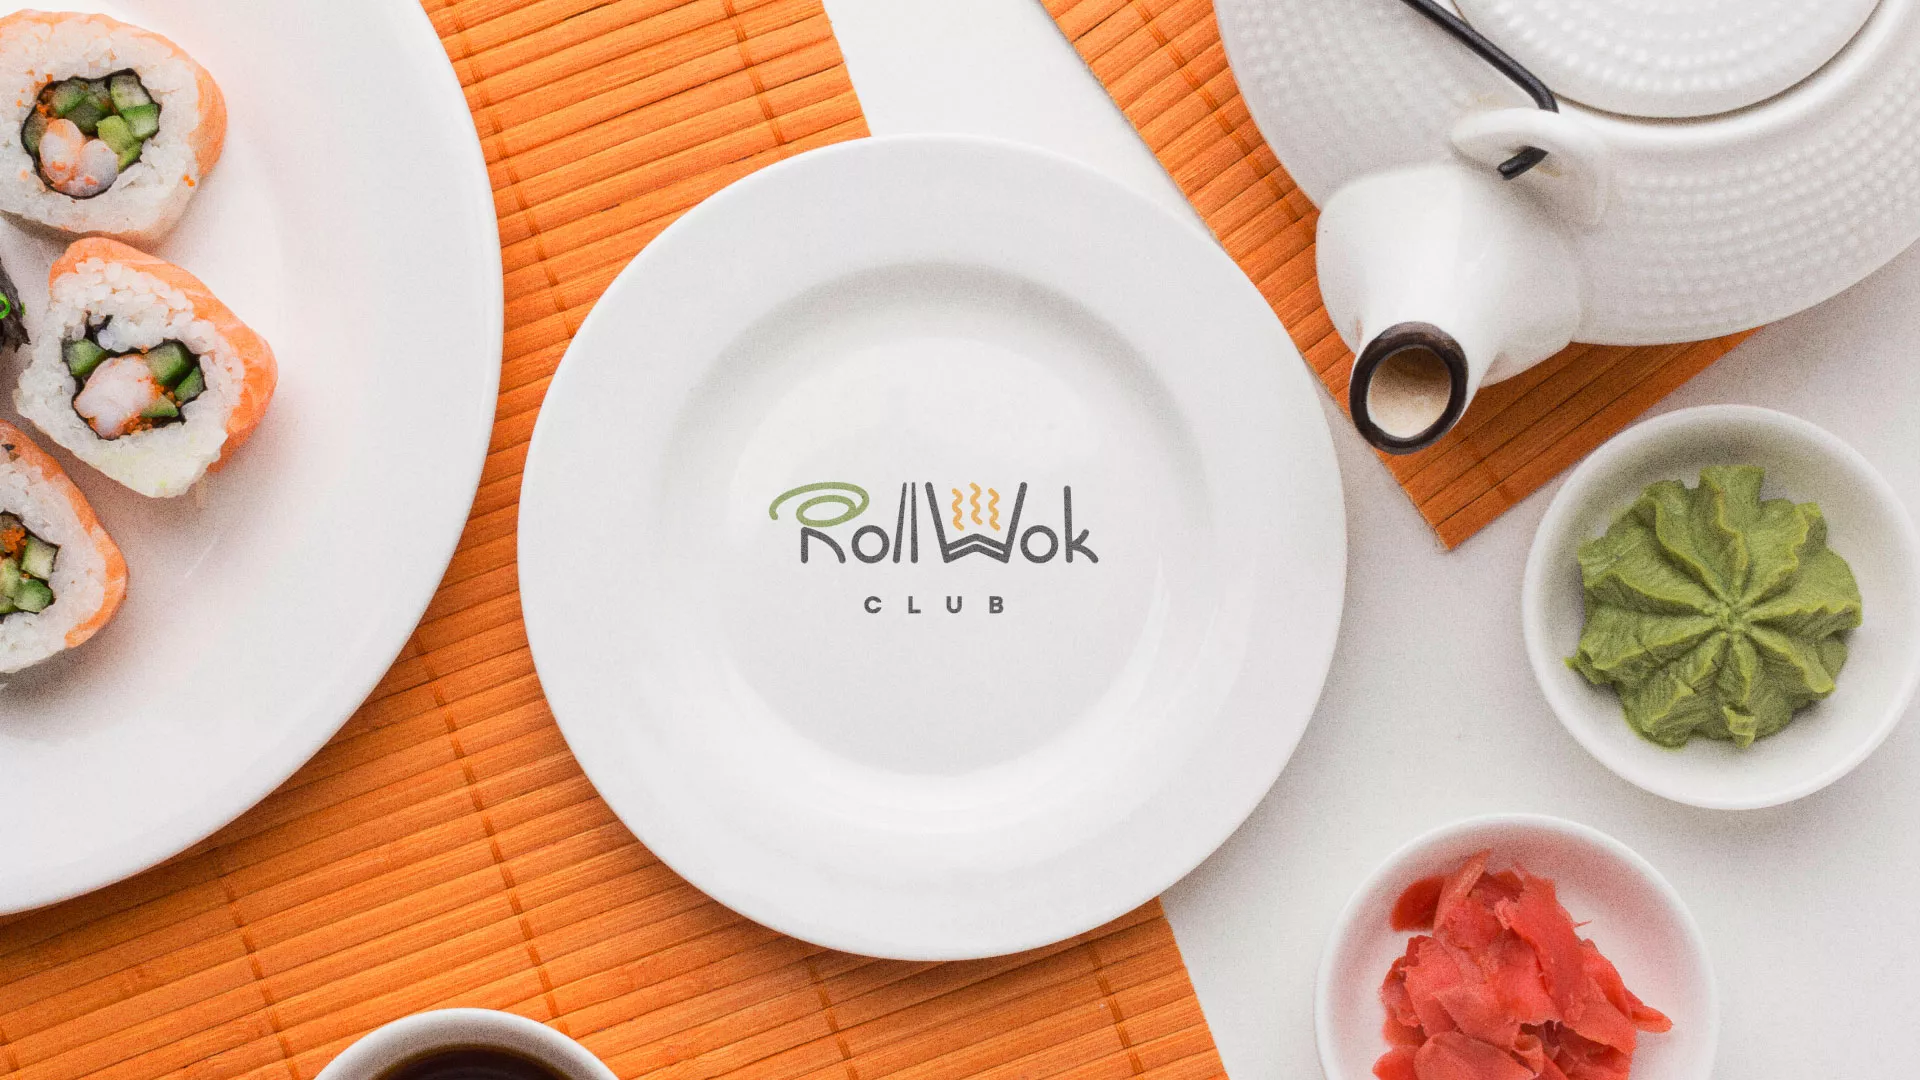 Разработка логотипа и фирменного стиля суши-бара «Roll Wok Club» в Верхнеуральске